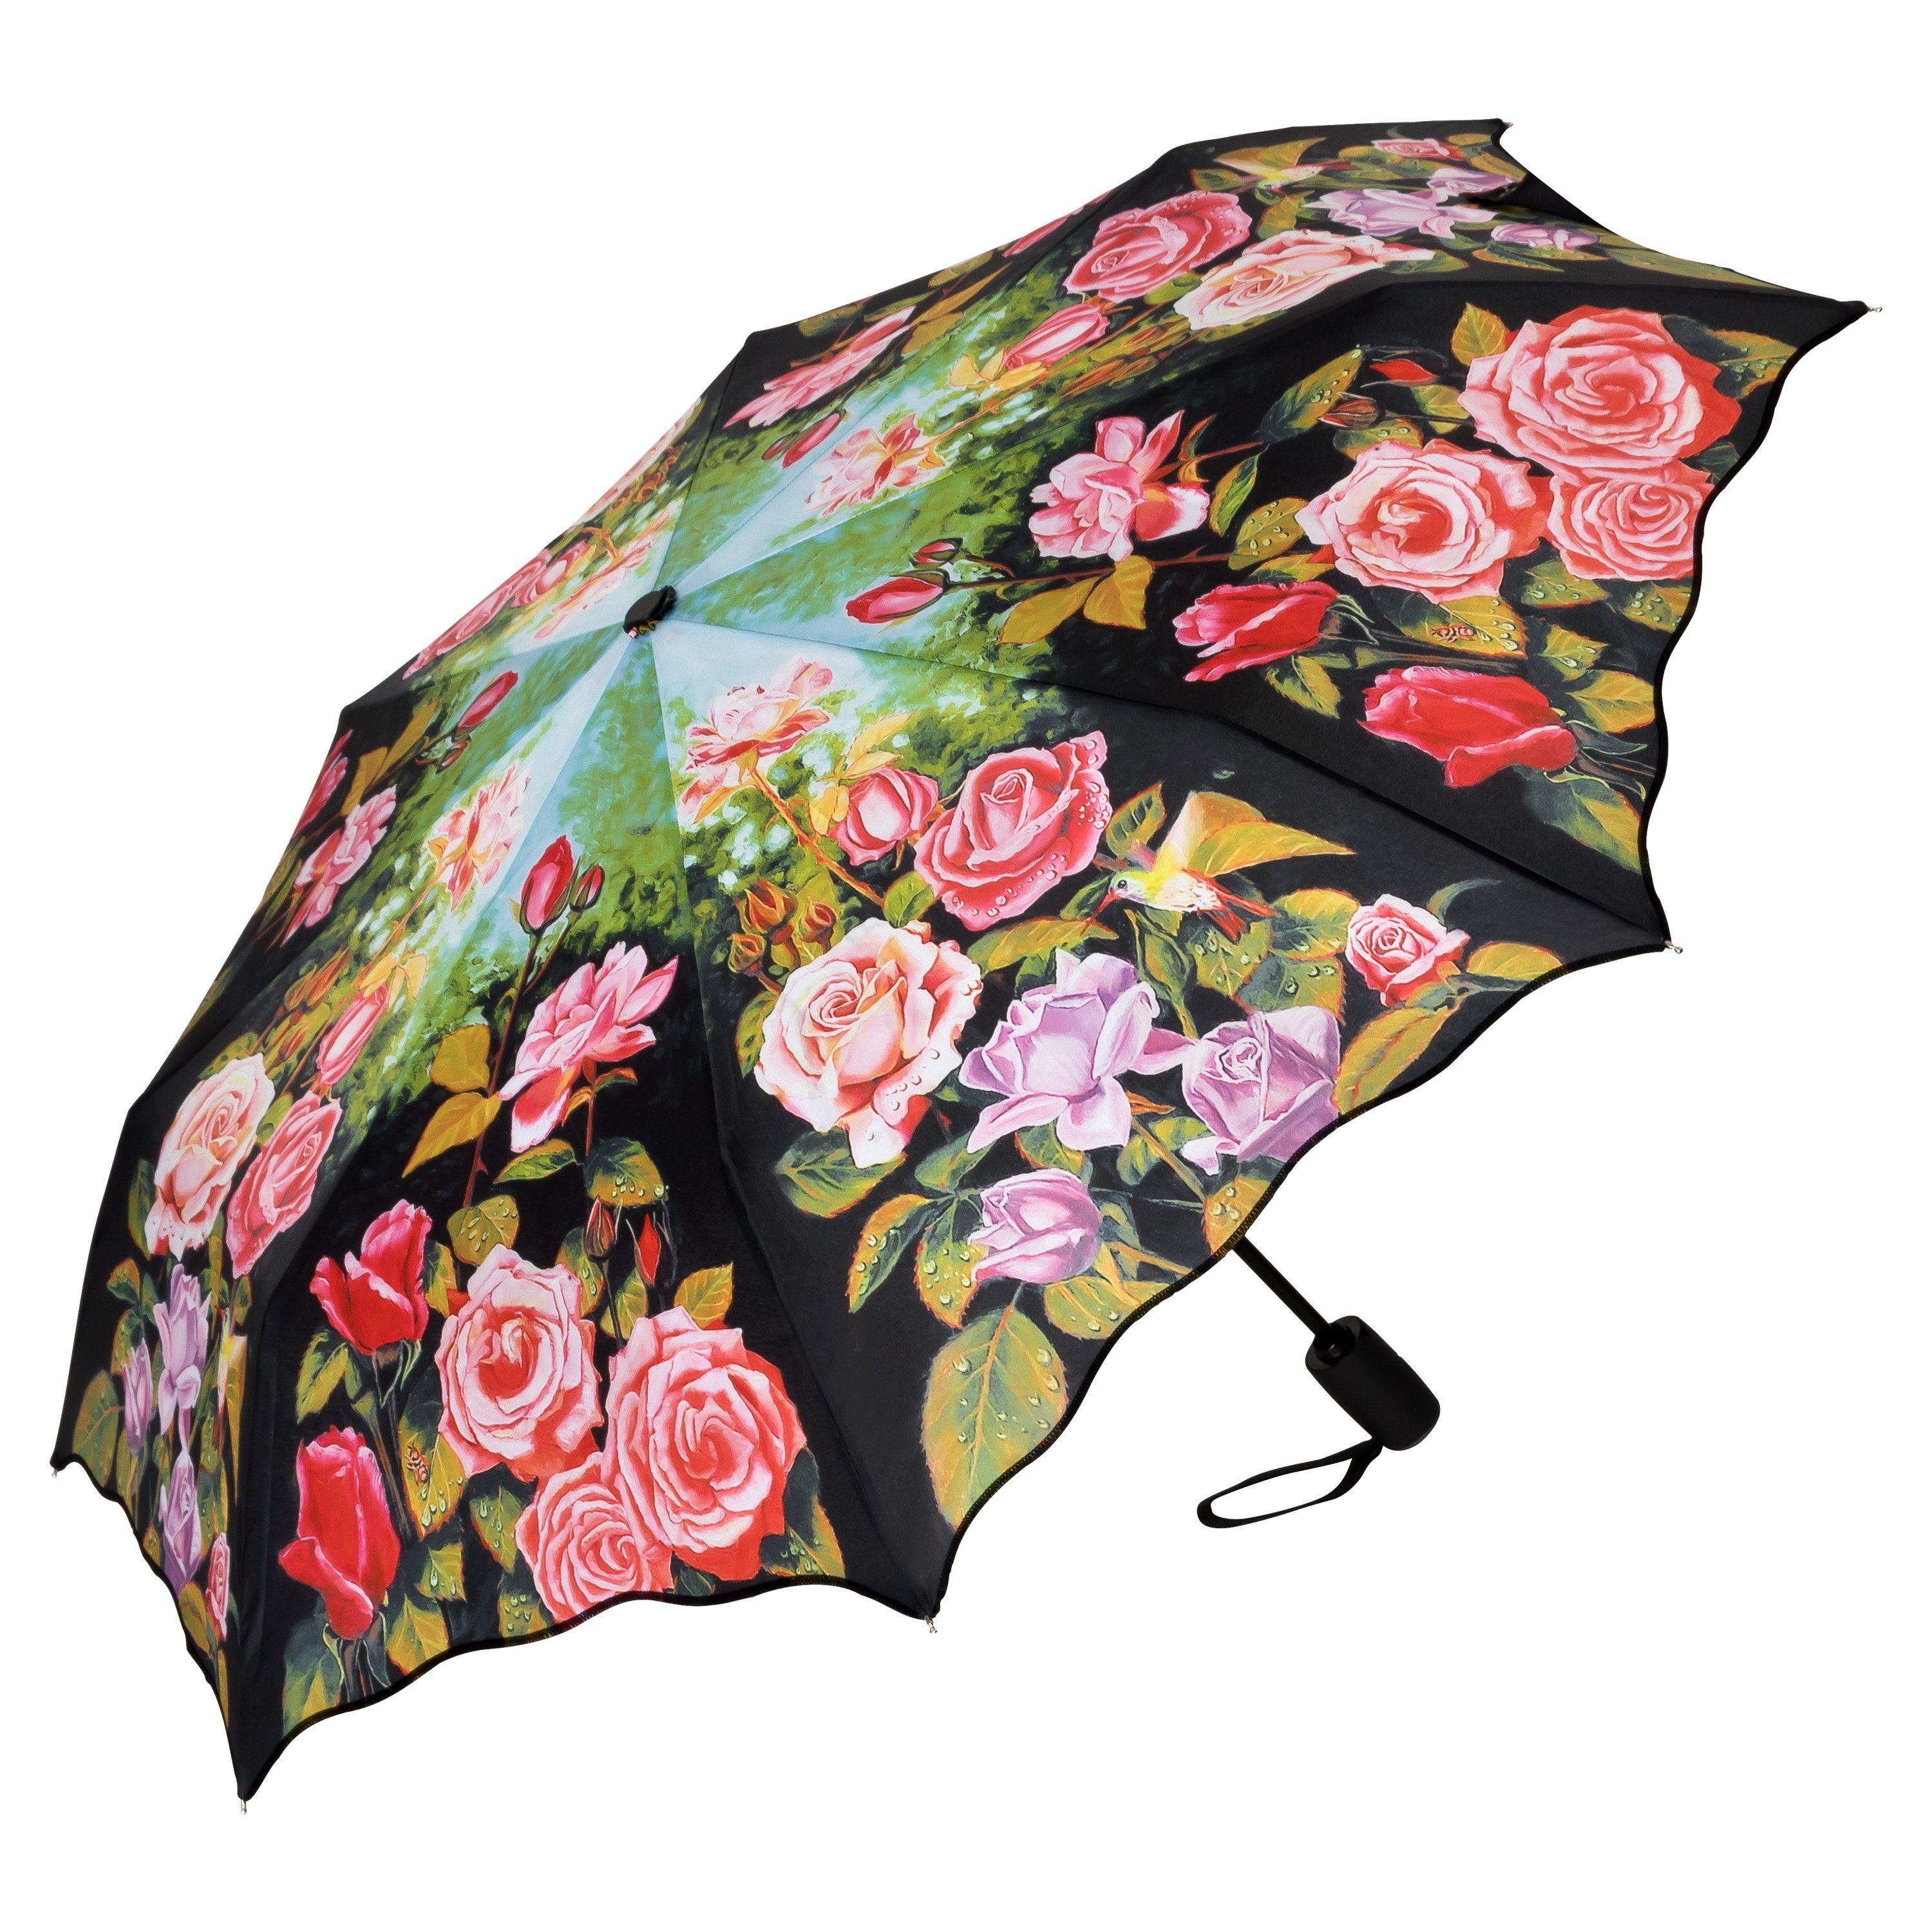 von Lilienfeld Taschenregenschirm »VON LILIENFELD Regenschirm Taschenschirm  Rosen Garten Stabil Leicht Auf-Zu Automatik Windfest Damen«, Wellenkante  online kaufen | OTTO